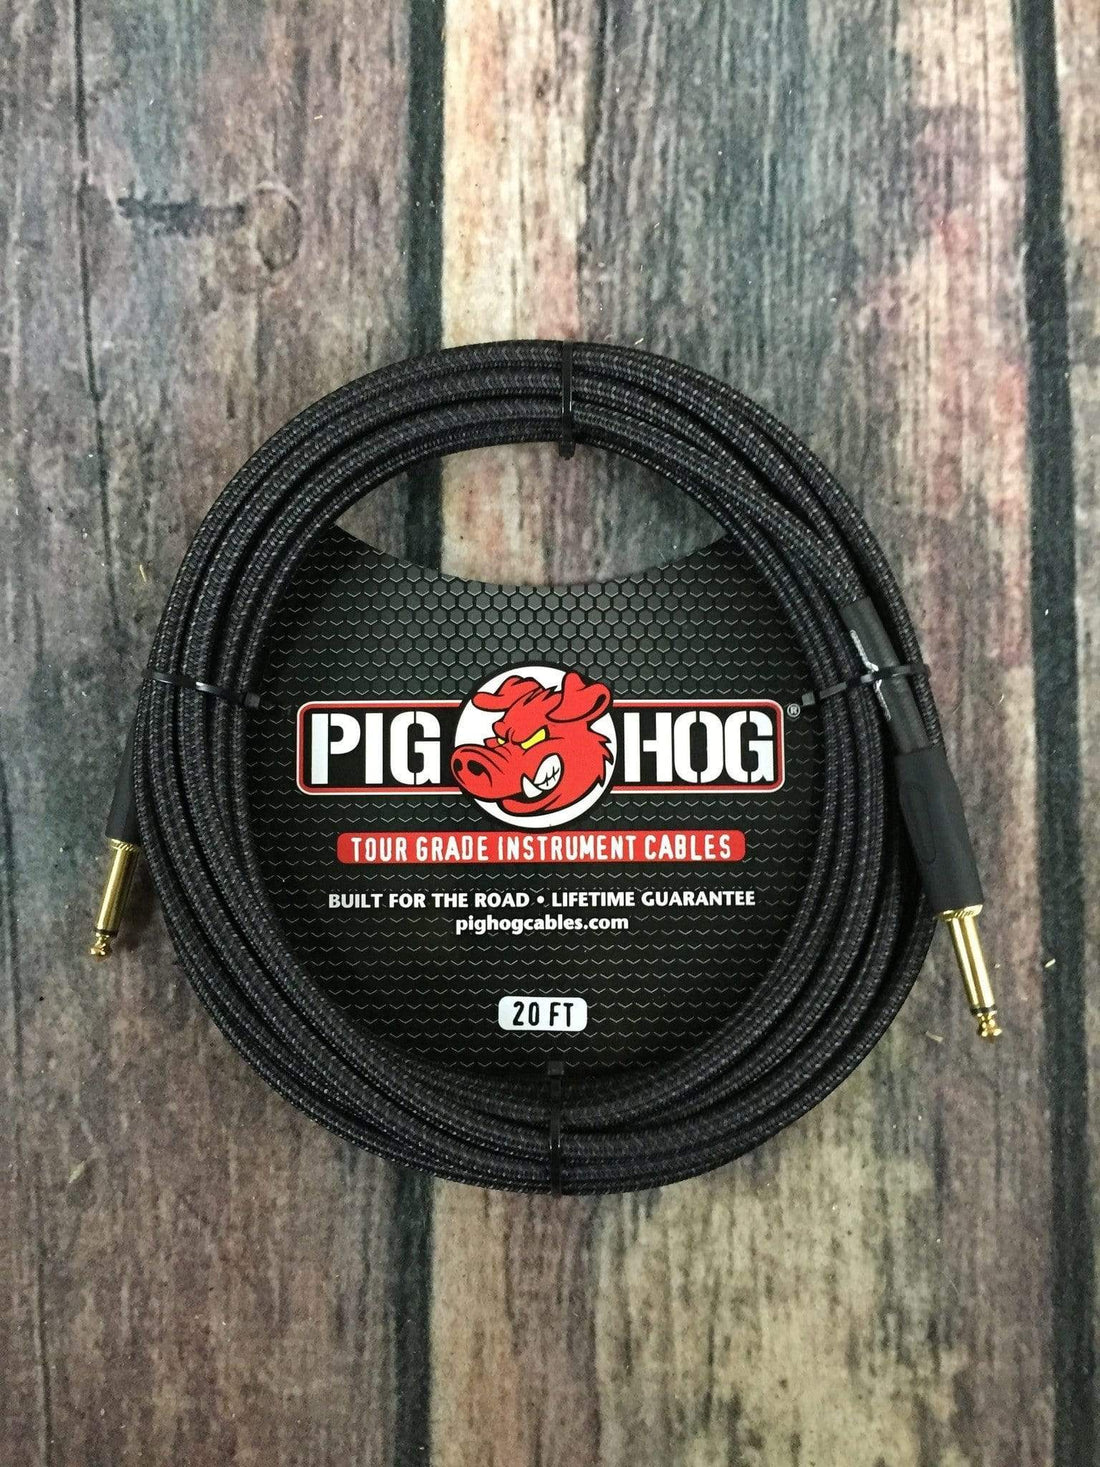 Cable Guitarra, Bajo, Ukulele, Hone Black 6.1m Pch20bk Pig Hog